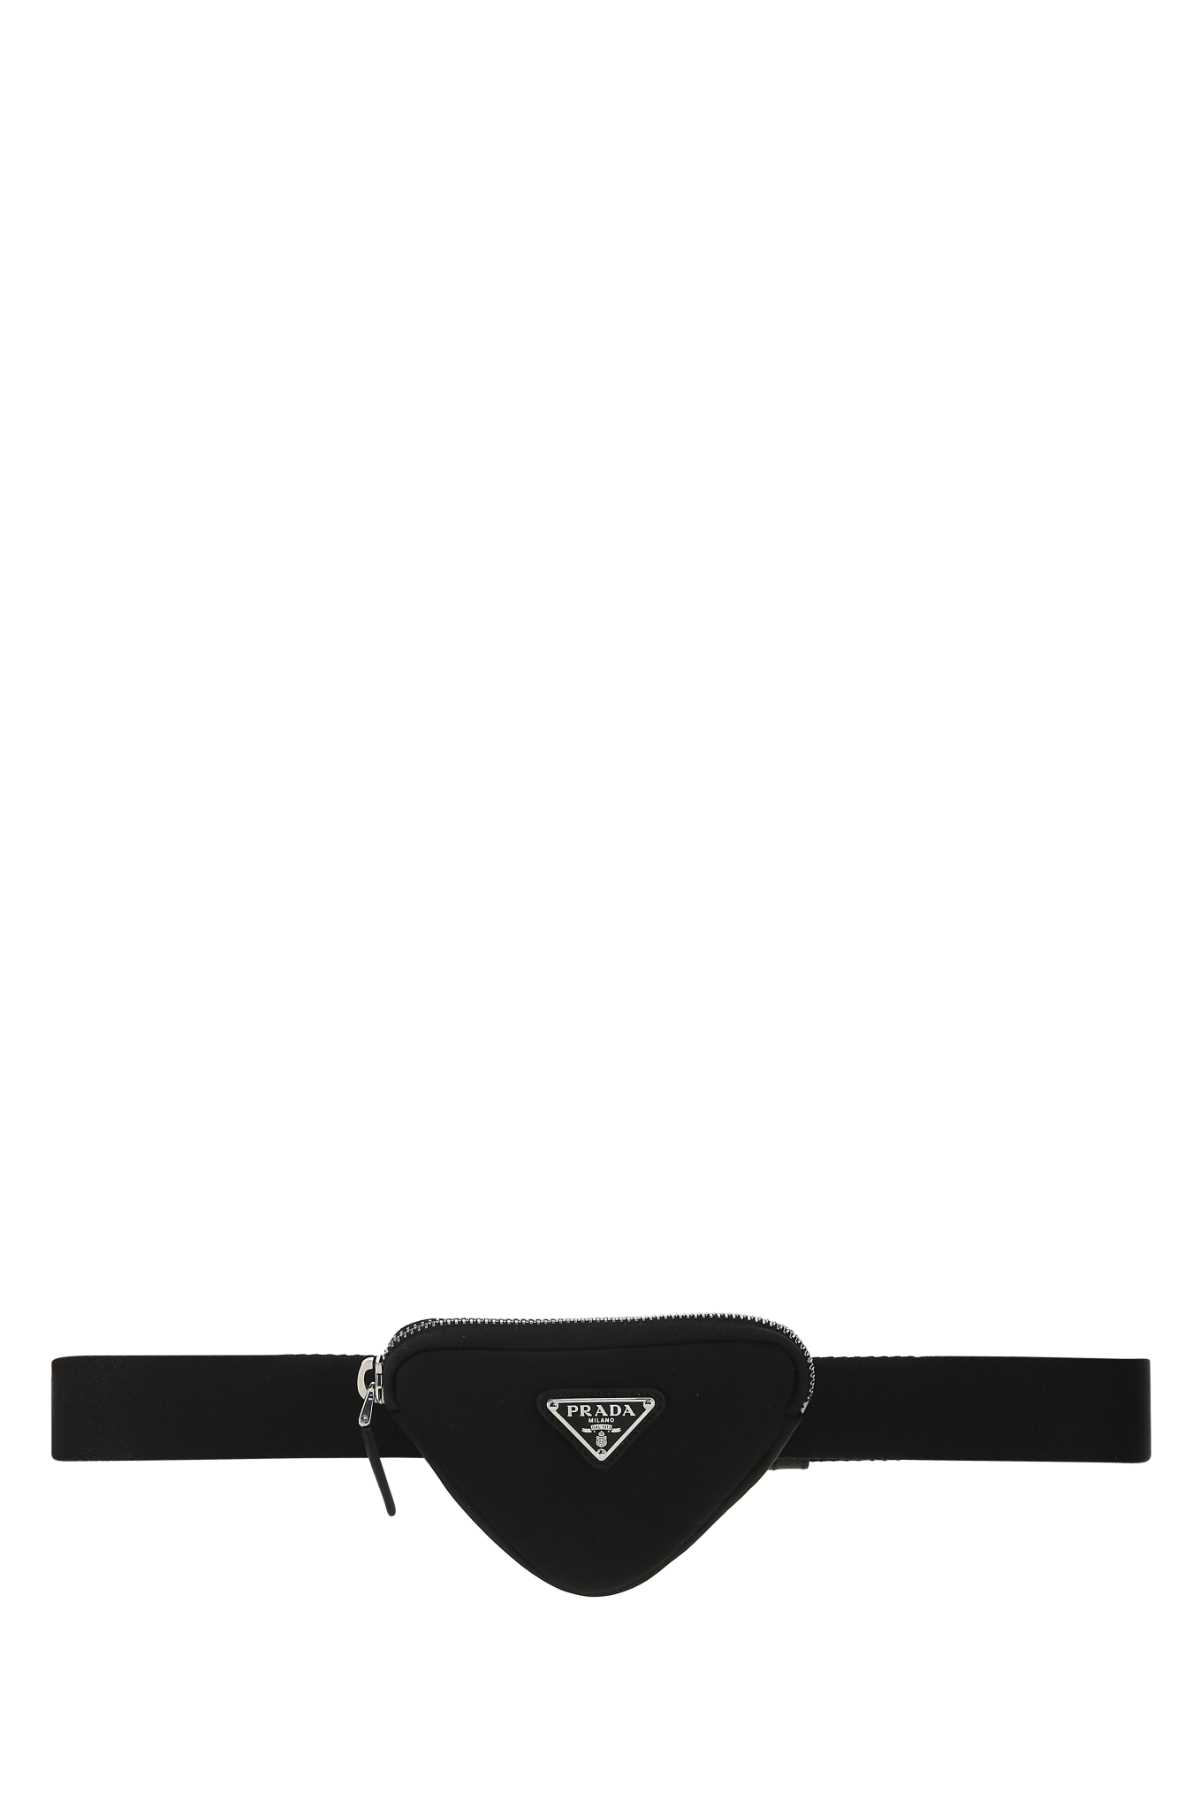 Shop Prada Black Nylon Belt In F0002